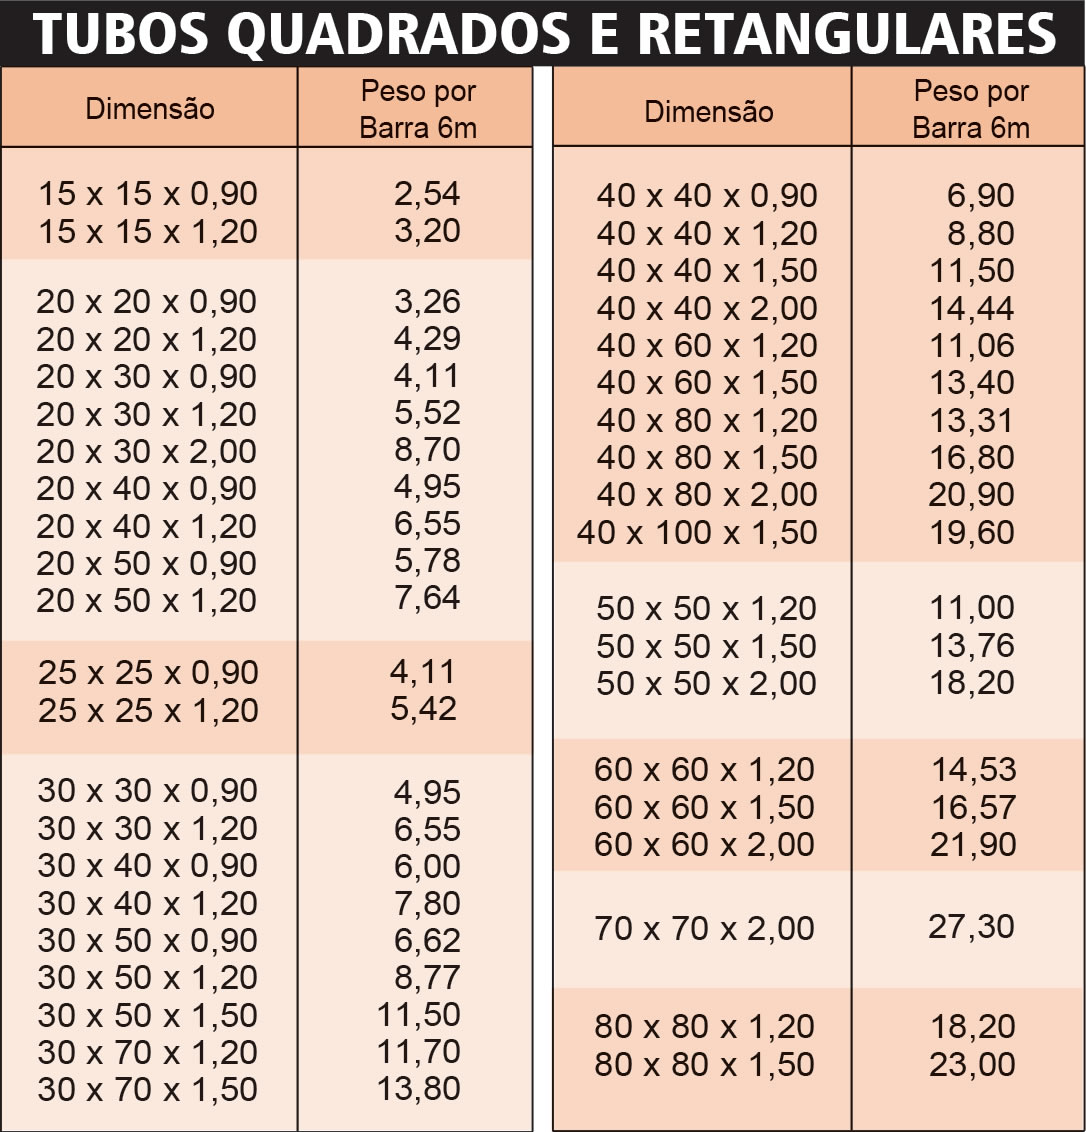 Tabelas Peso Tubo Retangular Images